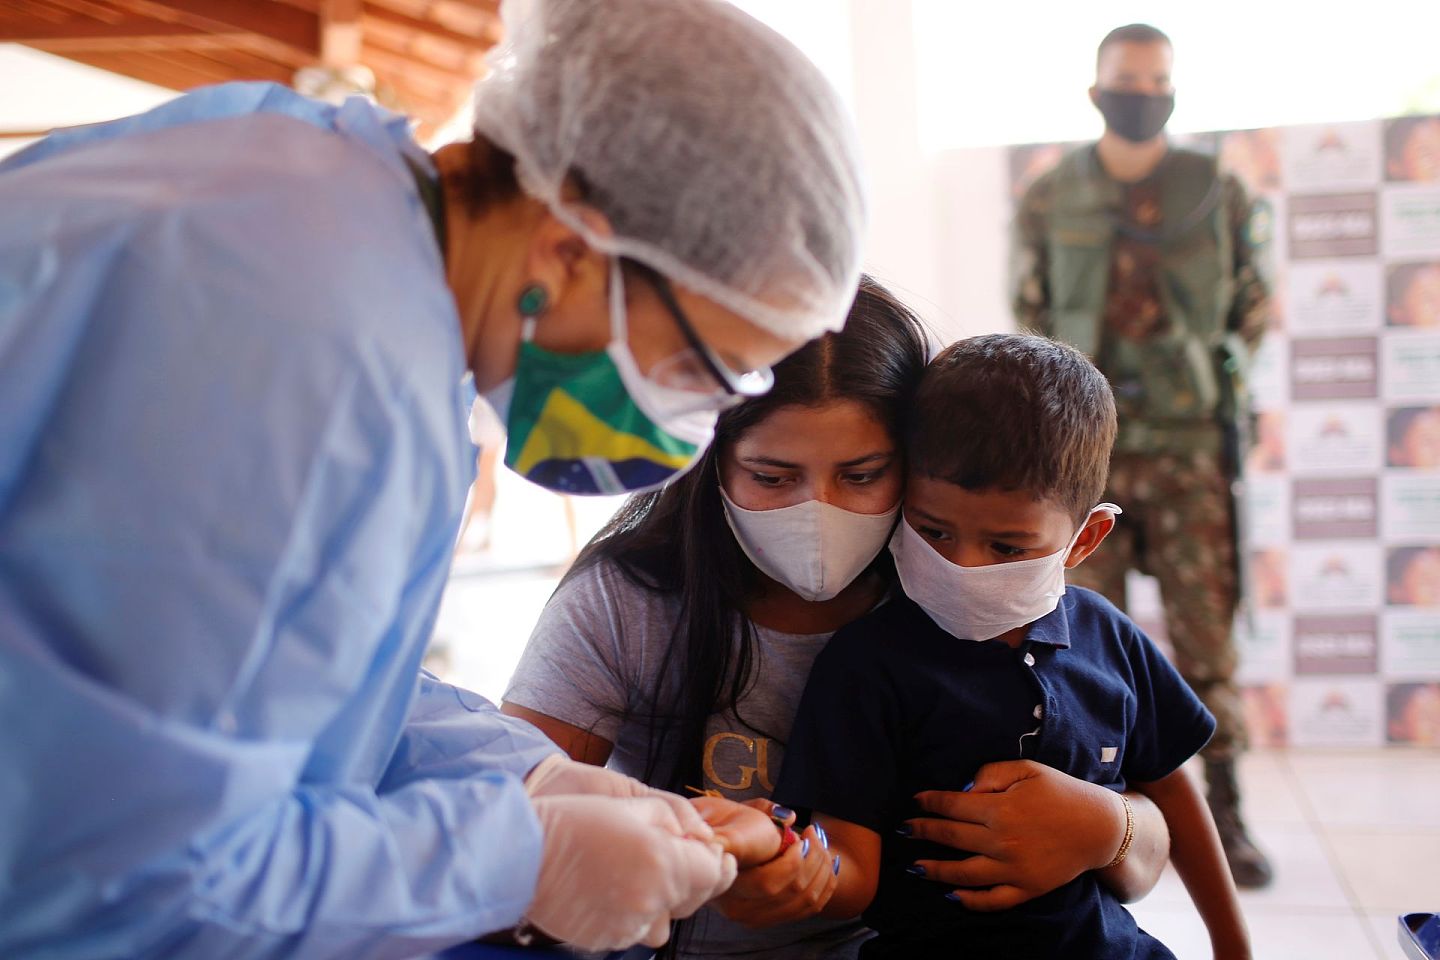 巴西目前是全球新冠肺炎疫情第三严重的国家，仅次于美国和印度。 图为2020年10月4日，巴西武装部队医疗队成员为一名原住民儿童进行检测。 （Reuters）